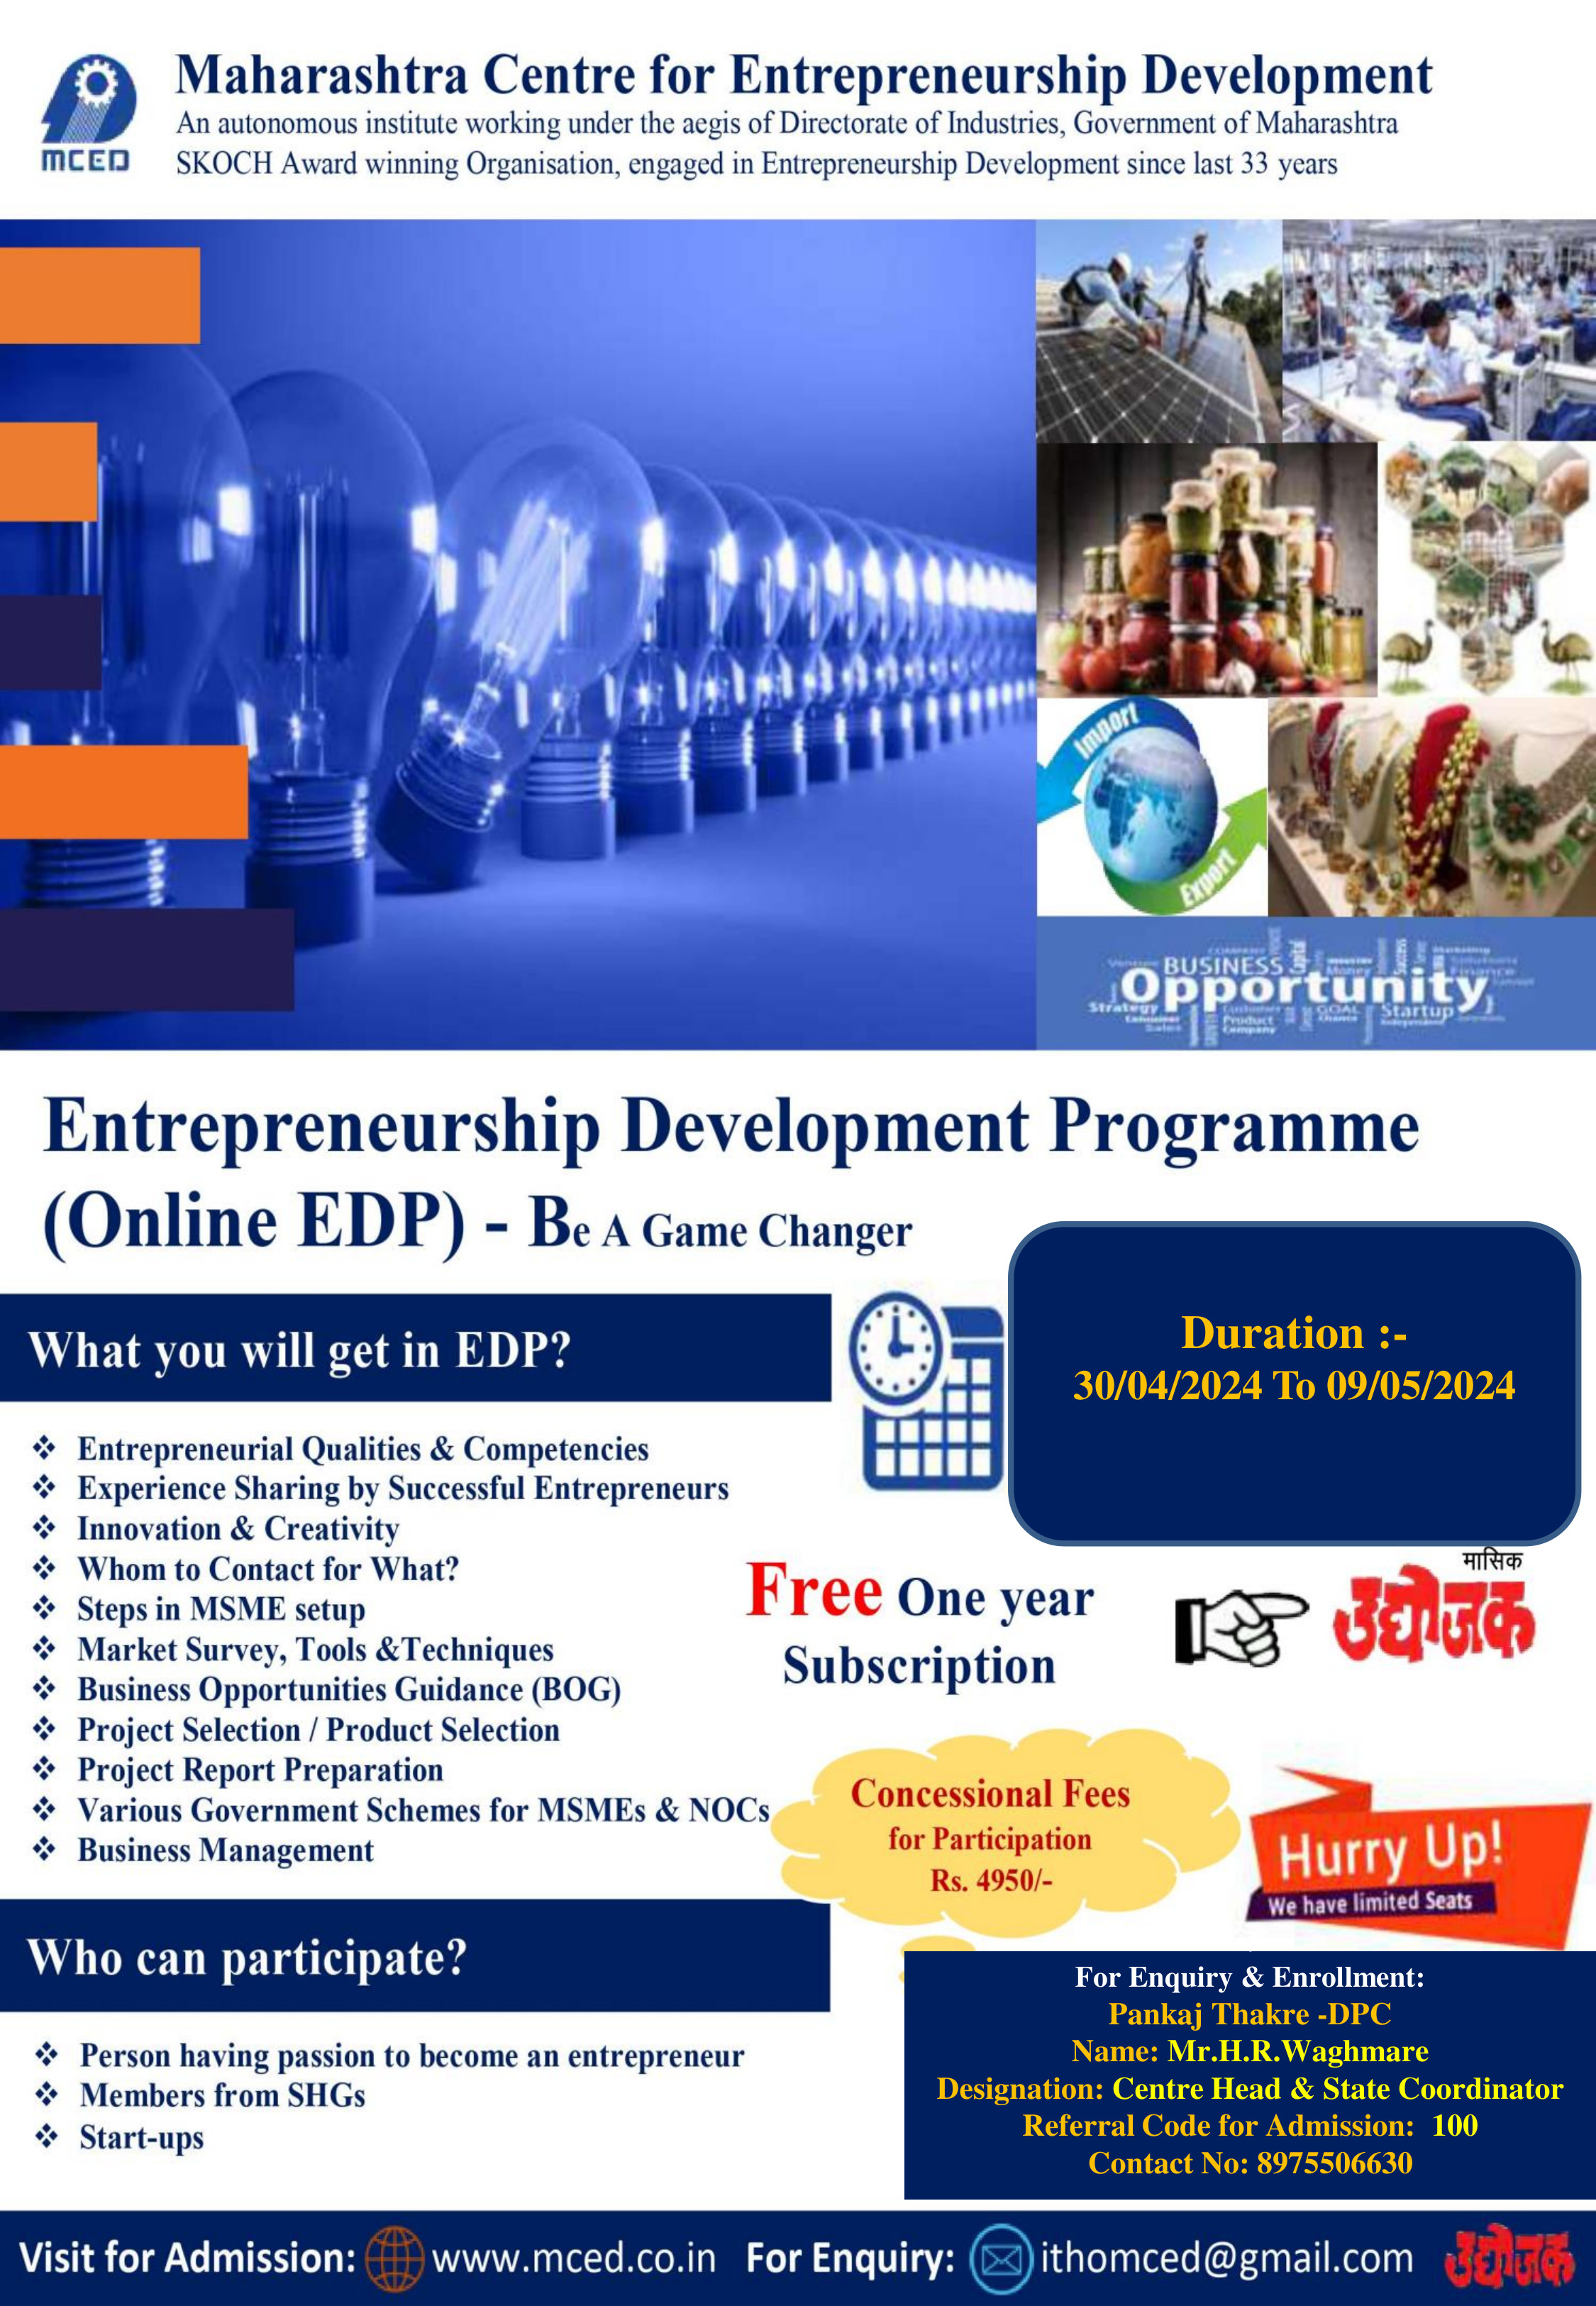 Online Entrepreneurship Development Programme (EDP)